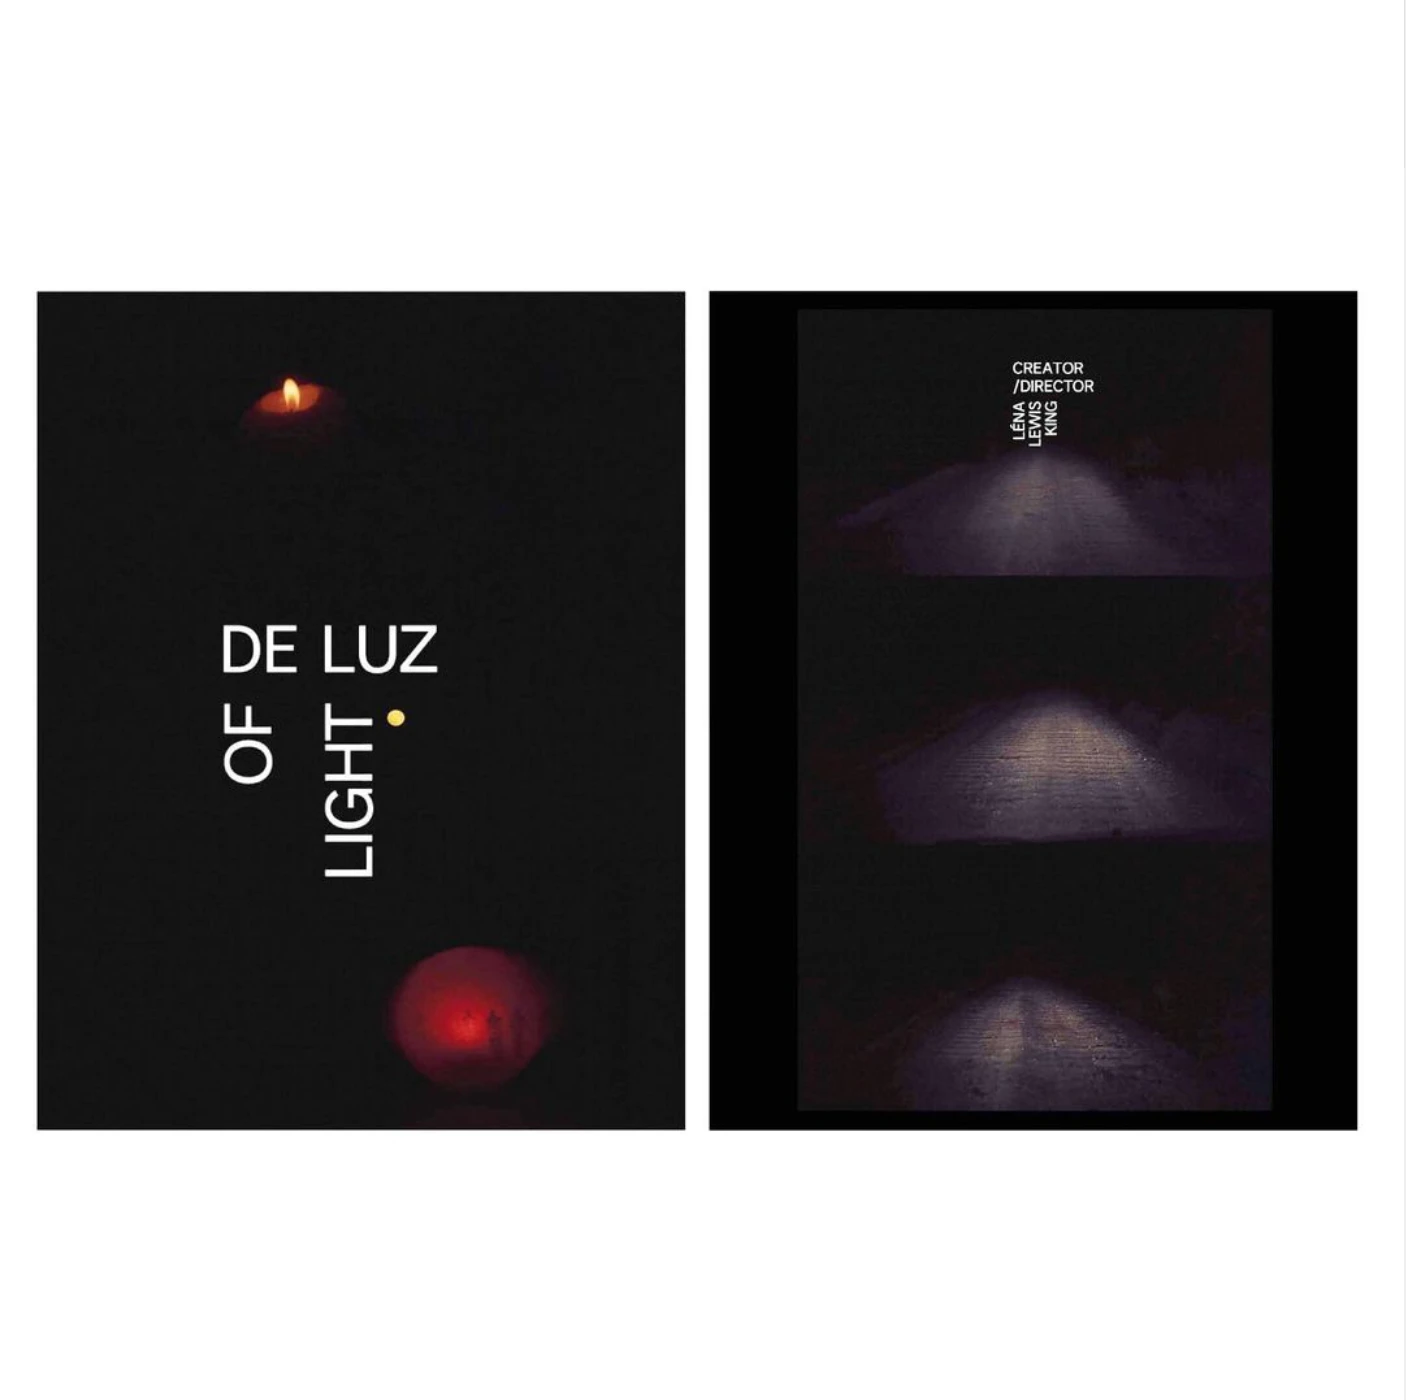 De Luz/Of Light